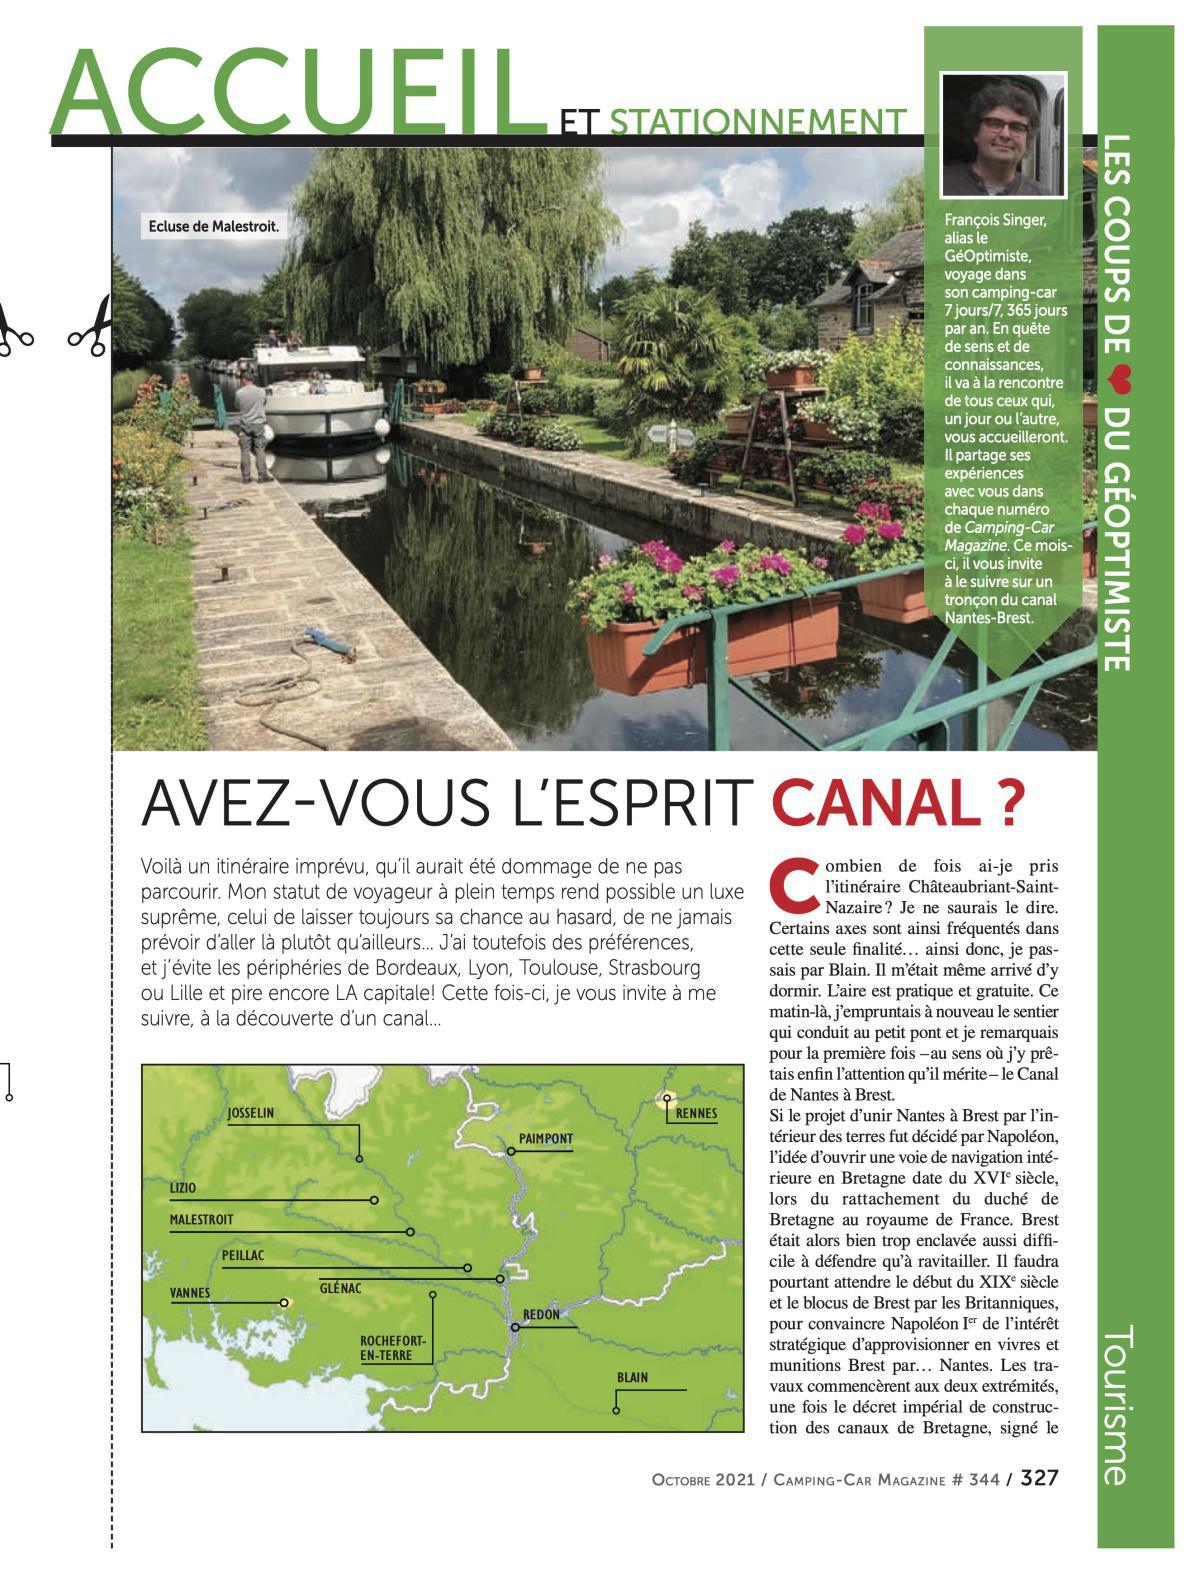 Canal de Nantes à Brest - CCM 344